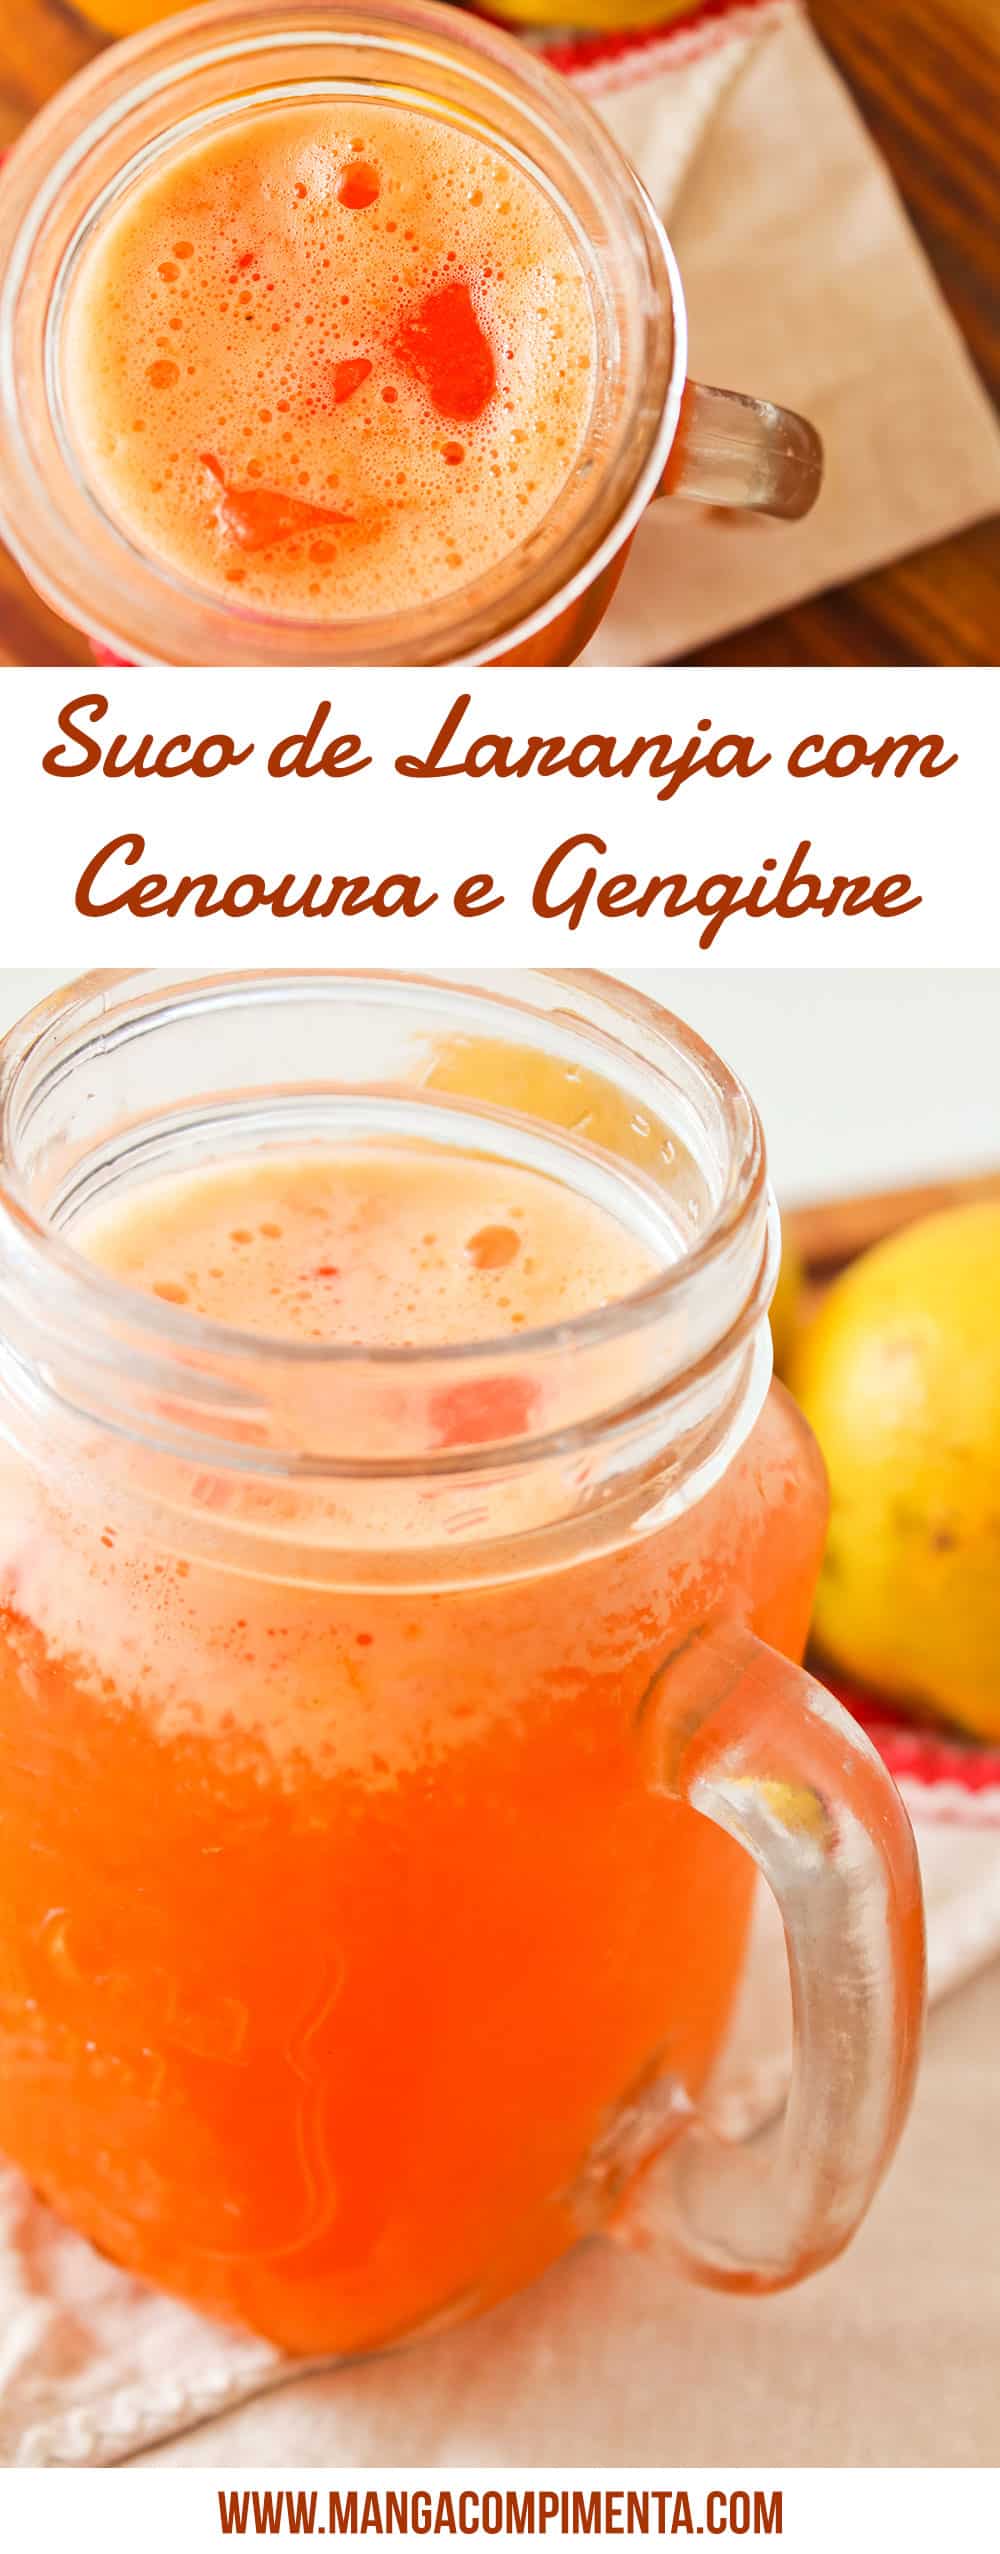 Suco de Laranja com Cenoura e Gengibre - Bebida nutritiva para matar a sede nesse verão.